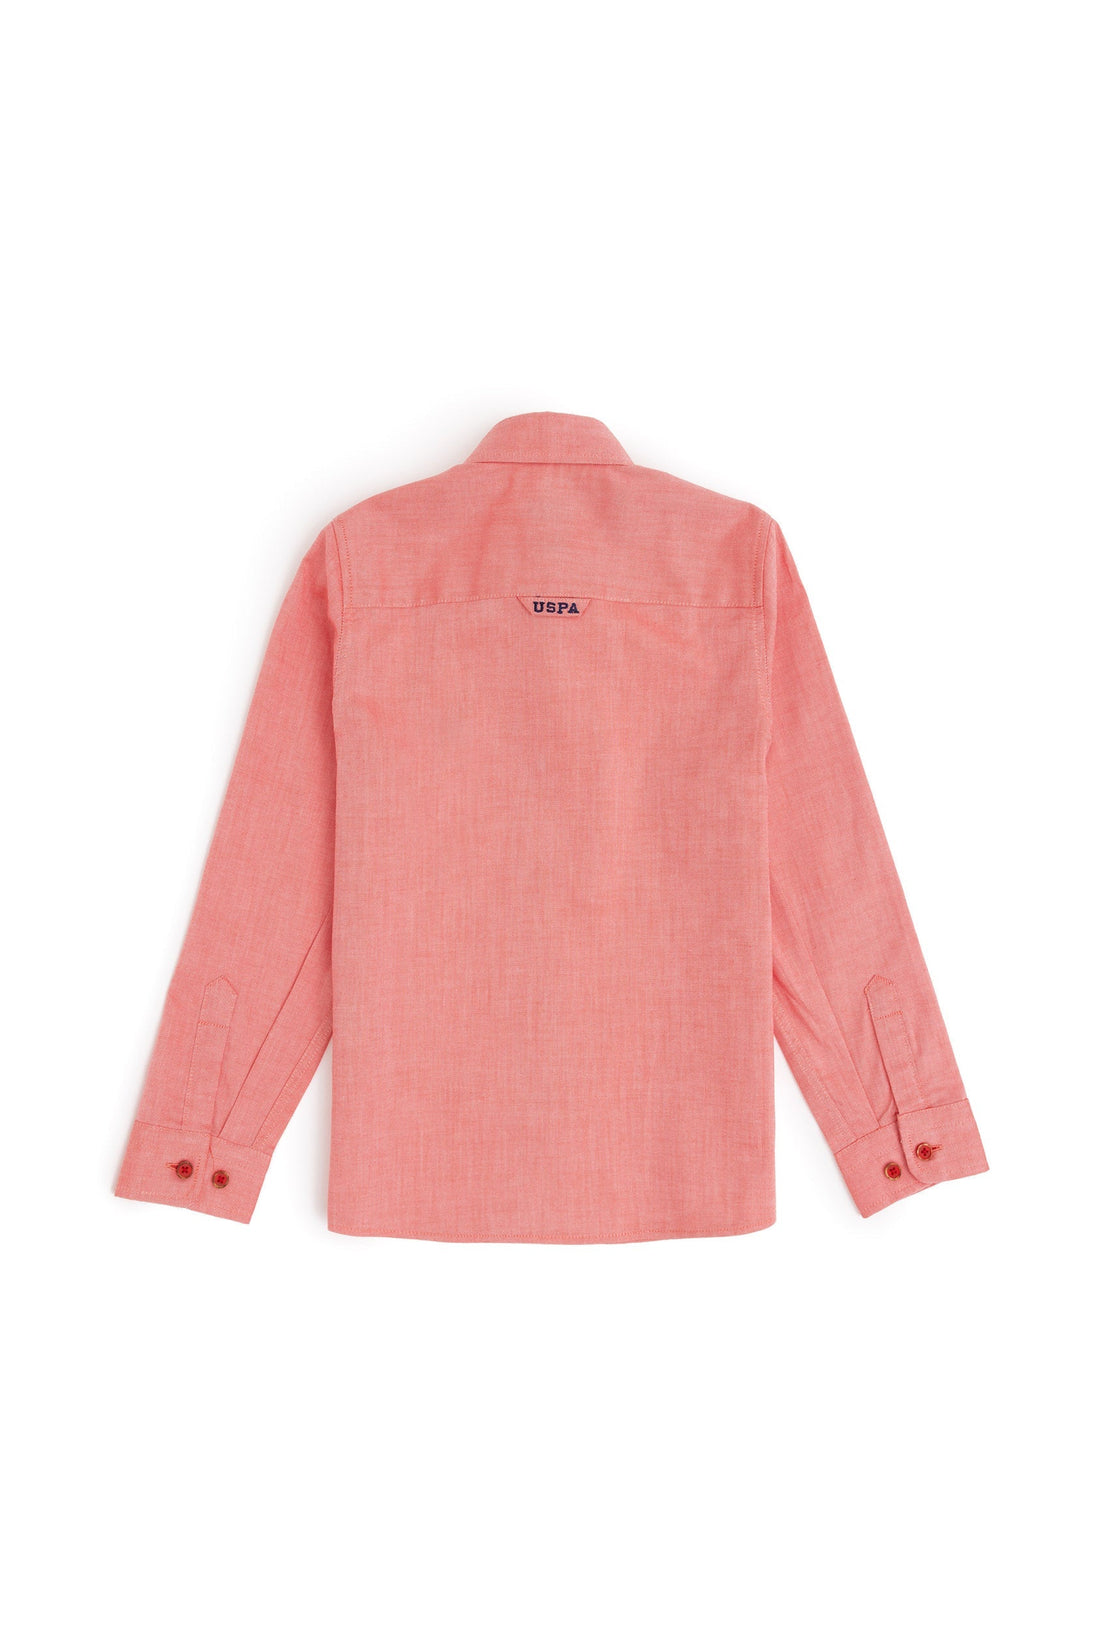 Boys Pink Shirt Long Sleeve_G083SZ0040 1840451_VR213_01